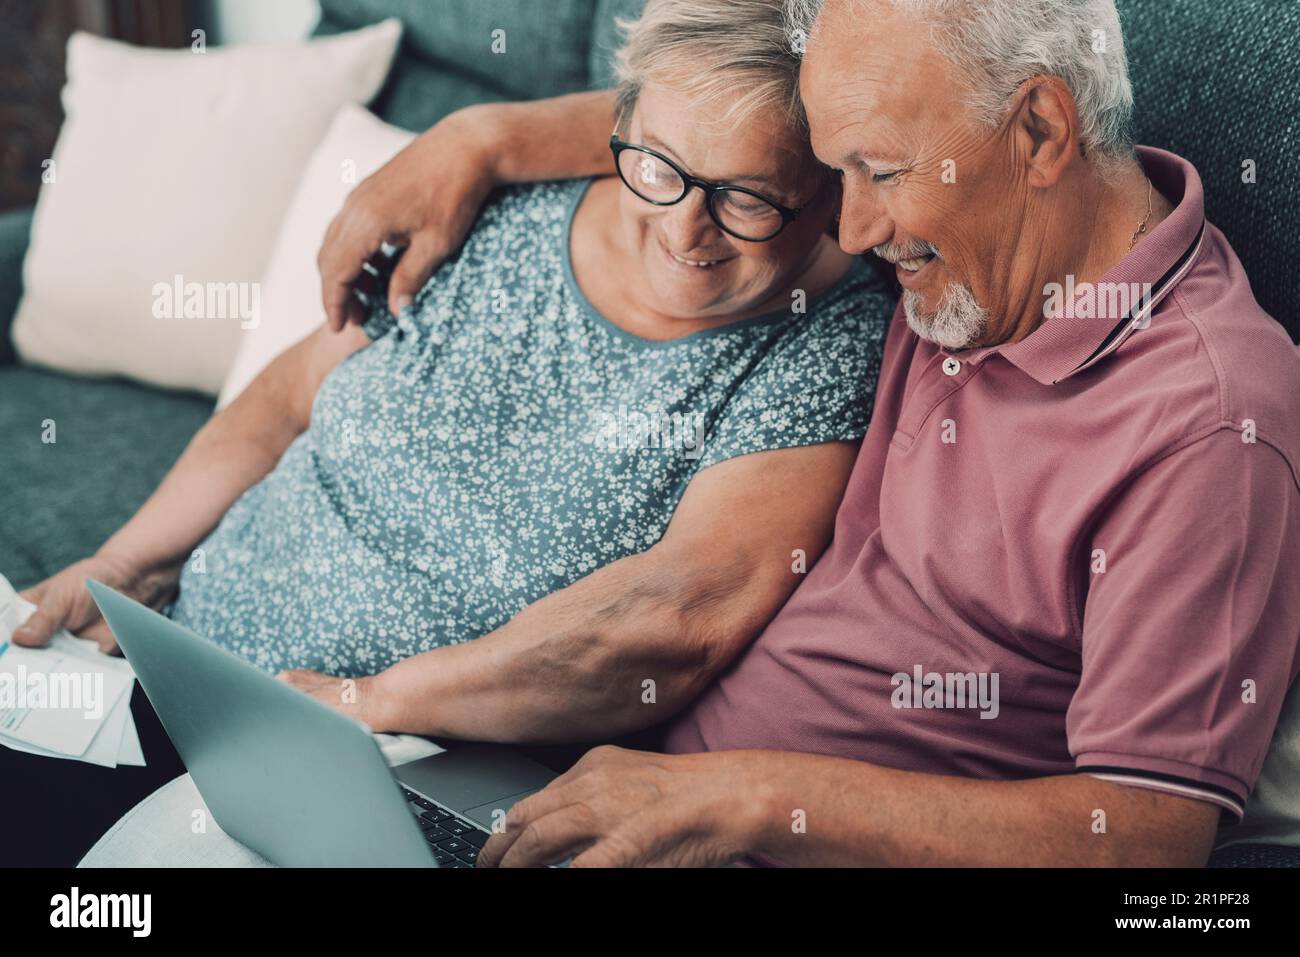 Una coppia anziana felice e jyful nel paese che gode l'attività di svago della tecnologia e del Internet insieme al laptop che si siede sul divano. Persone anziane moderne con computer che navigano sul web e si rilassano Foto Stock